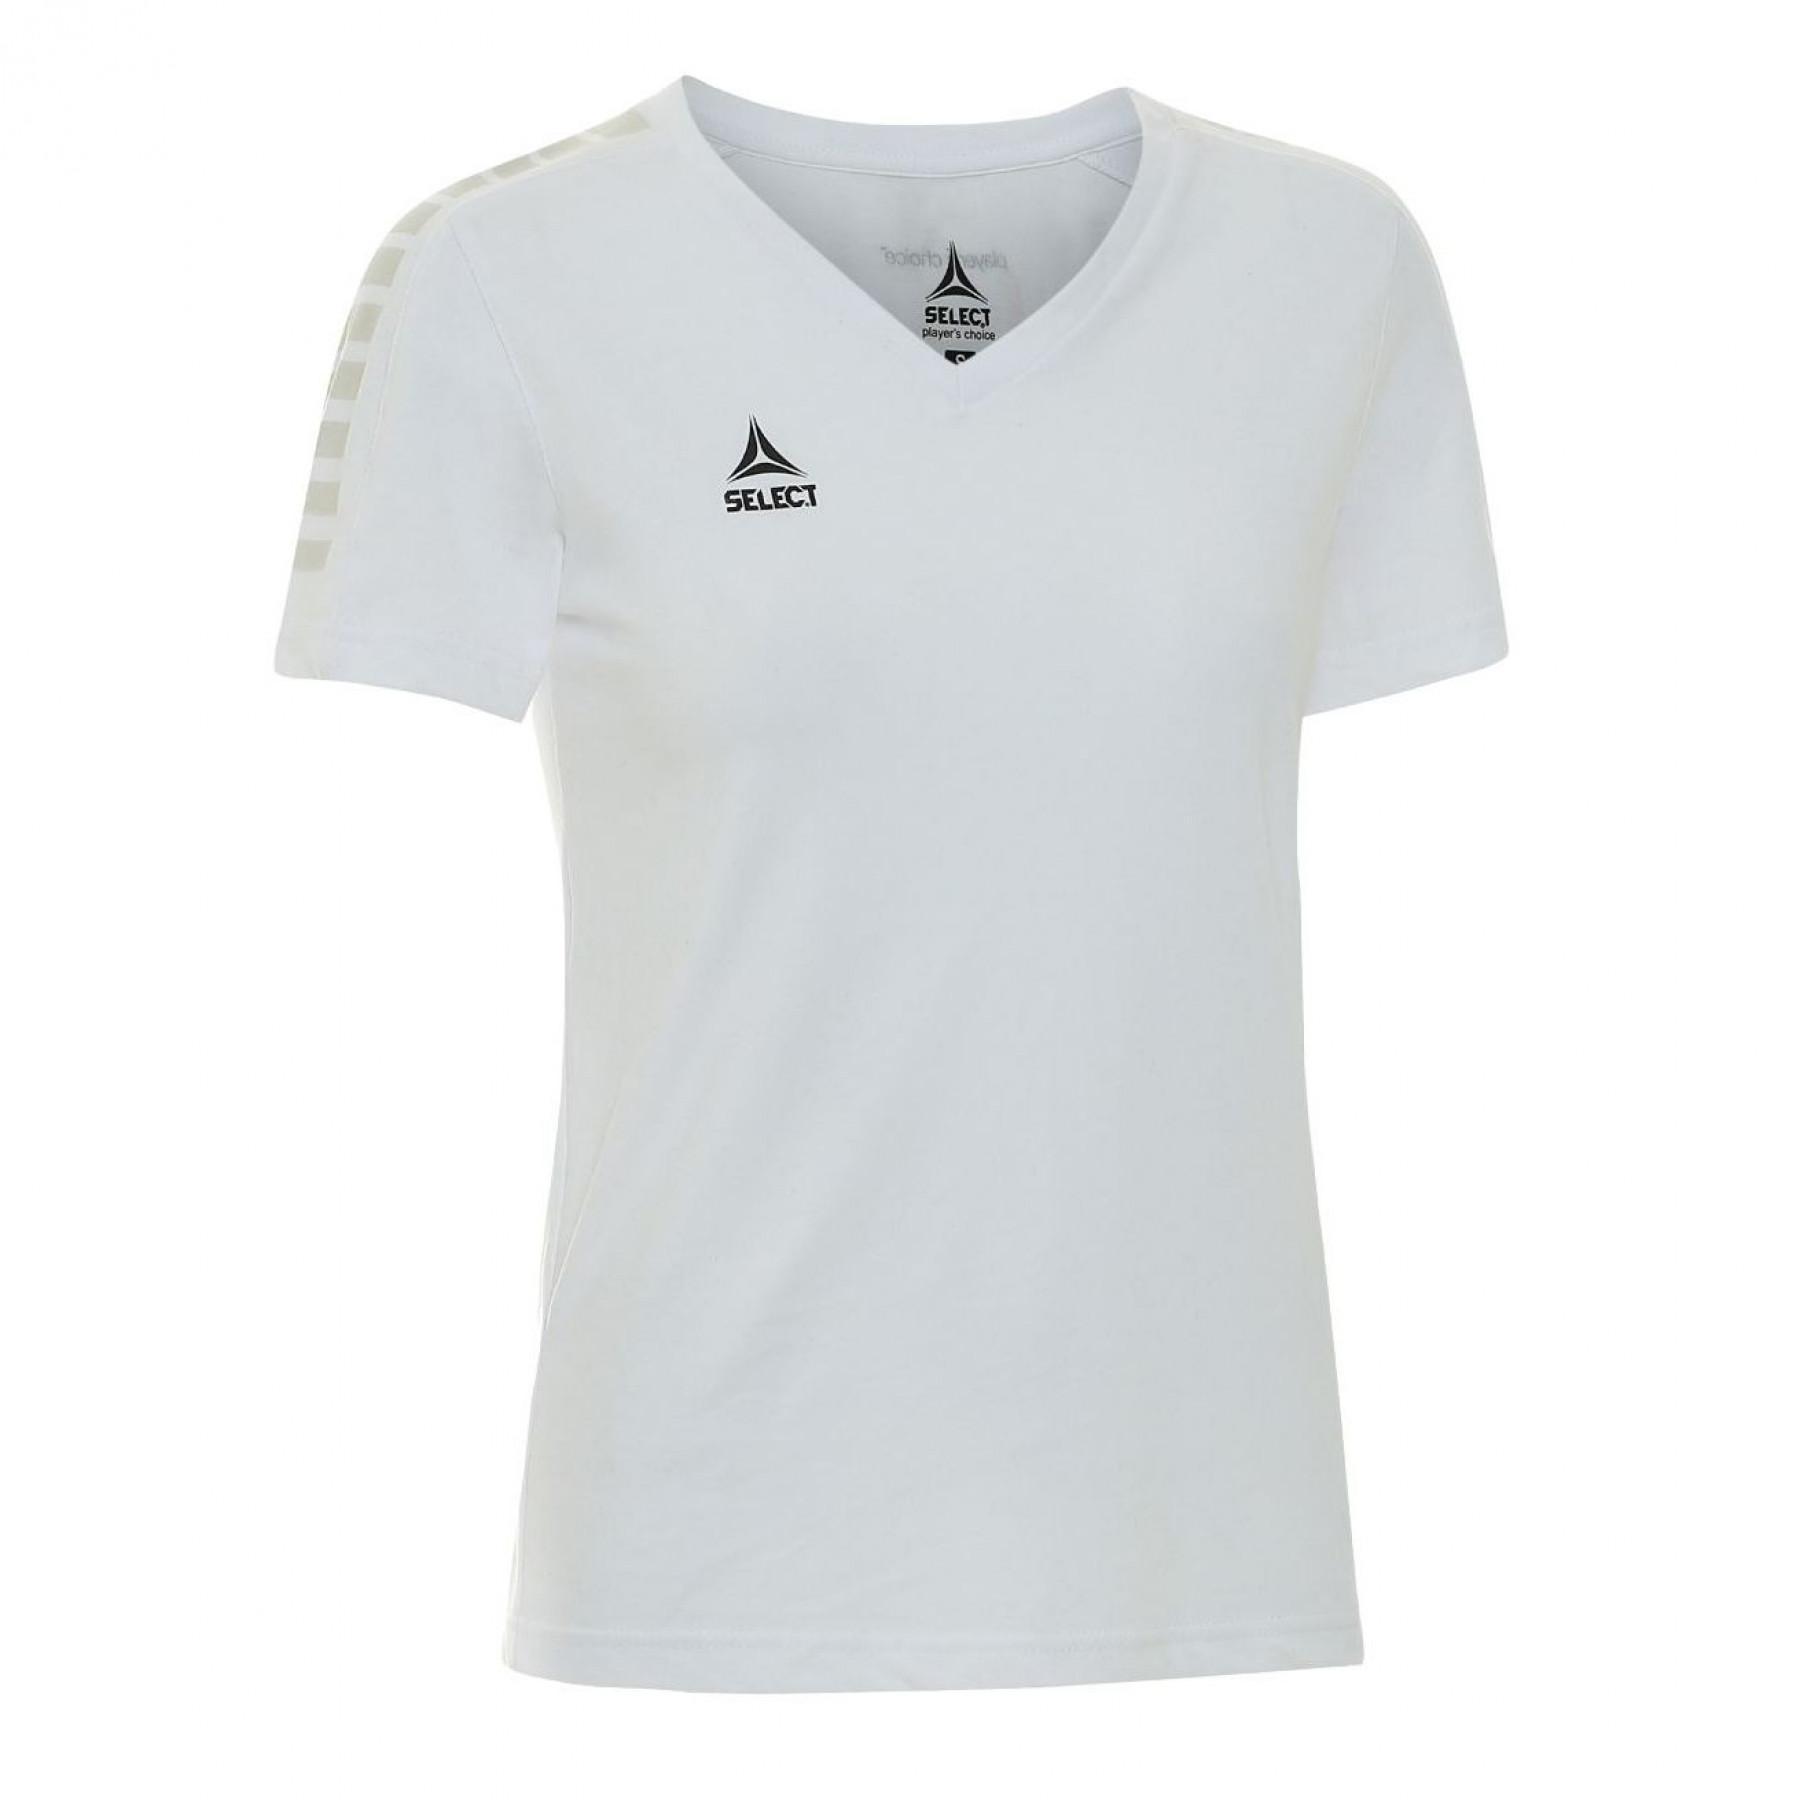 Frauen-T-Shirt Select Torino